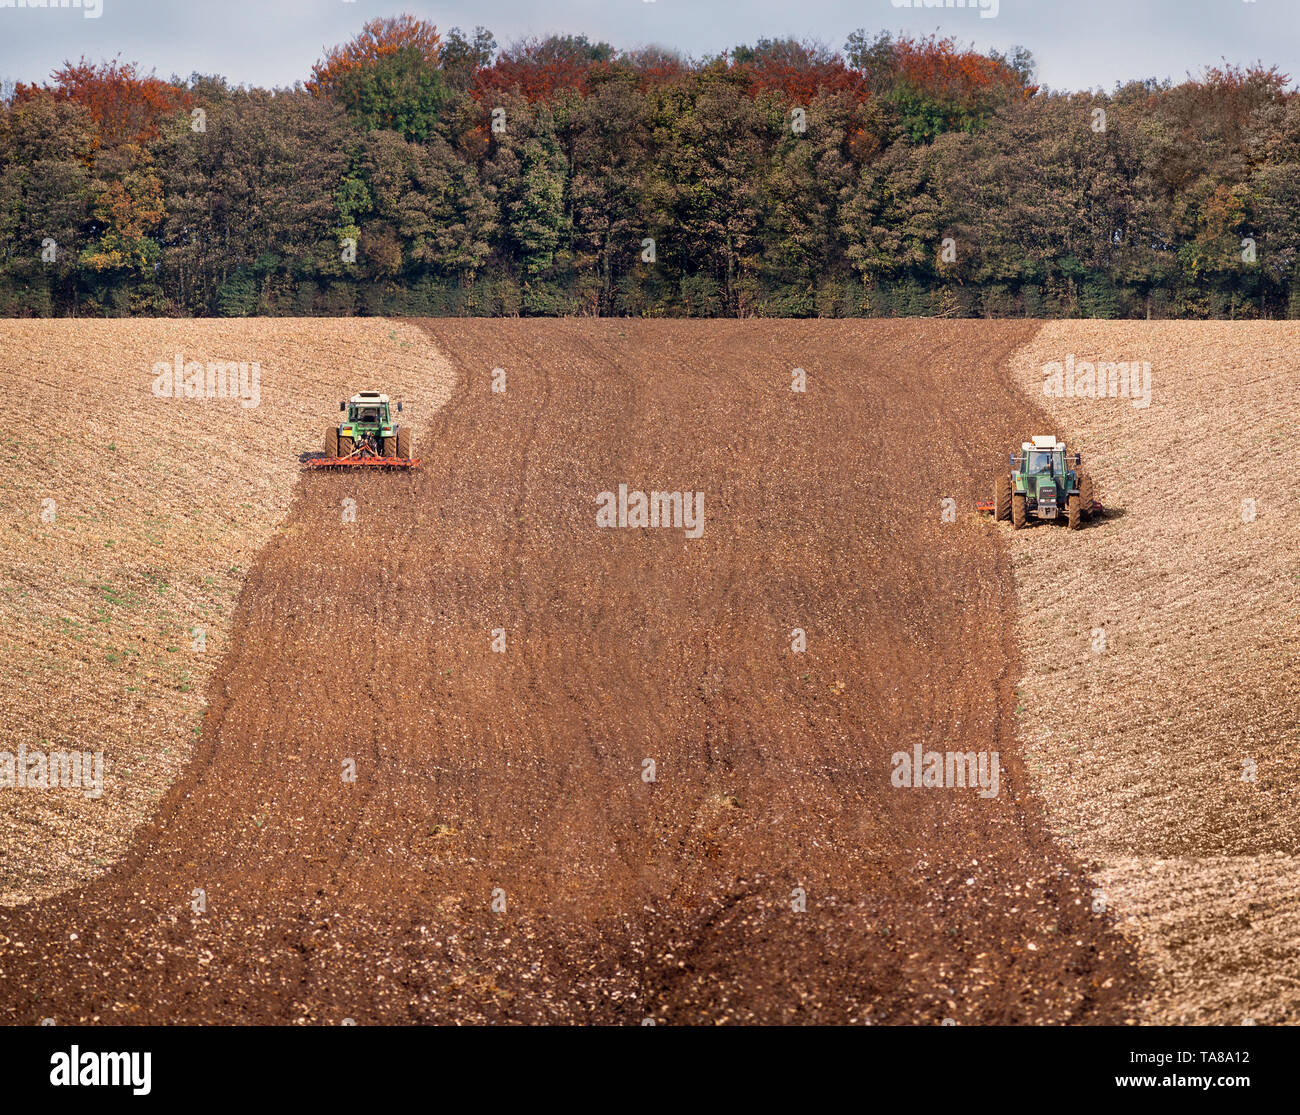 Landwirtschaft, Traktor pflügen ein landwirtschaftlicher Bereich, helle Sonne. Stockfoto